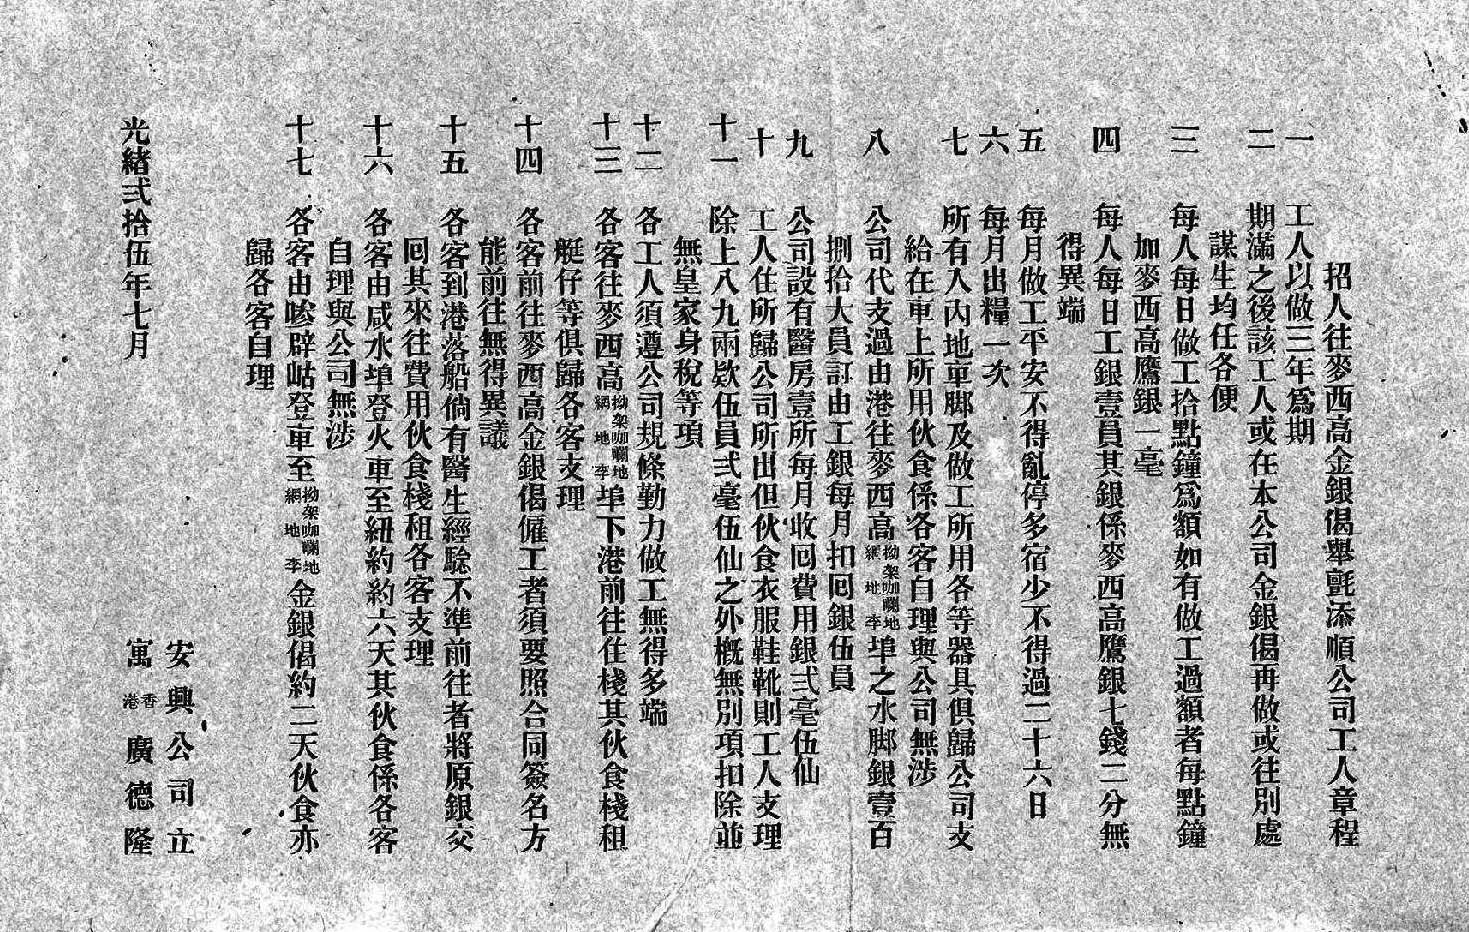 1899年香港广德隆安兴公司发布的墨西哥招工章程